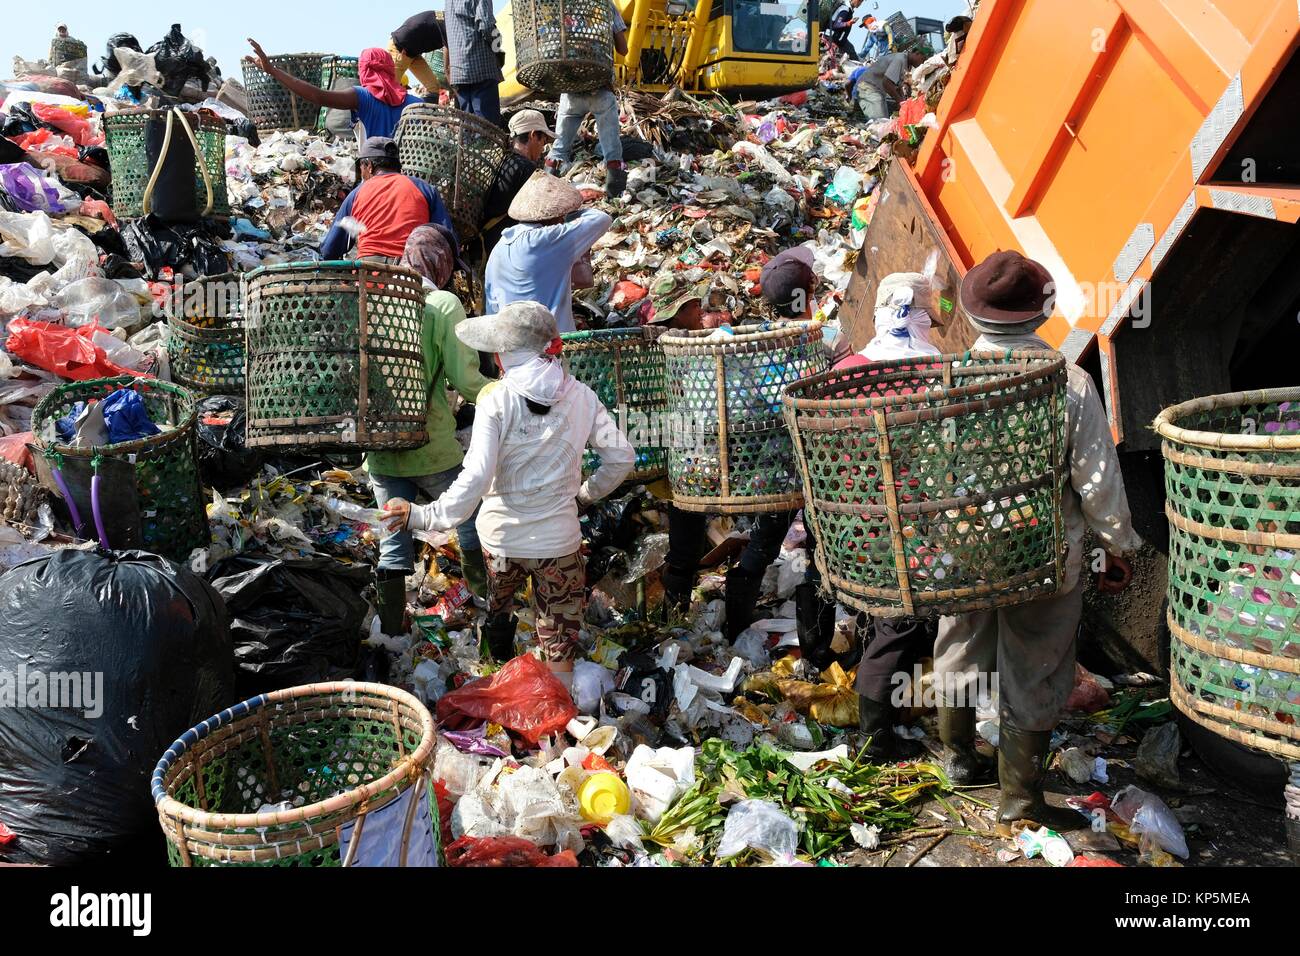 La gente busque material reciclable en Yakarta la basura en Bantar Gebang mudos en Besaki, oeste de Java, la isla de Java, Indonesia. Foto de stock